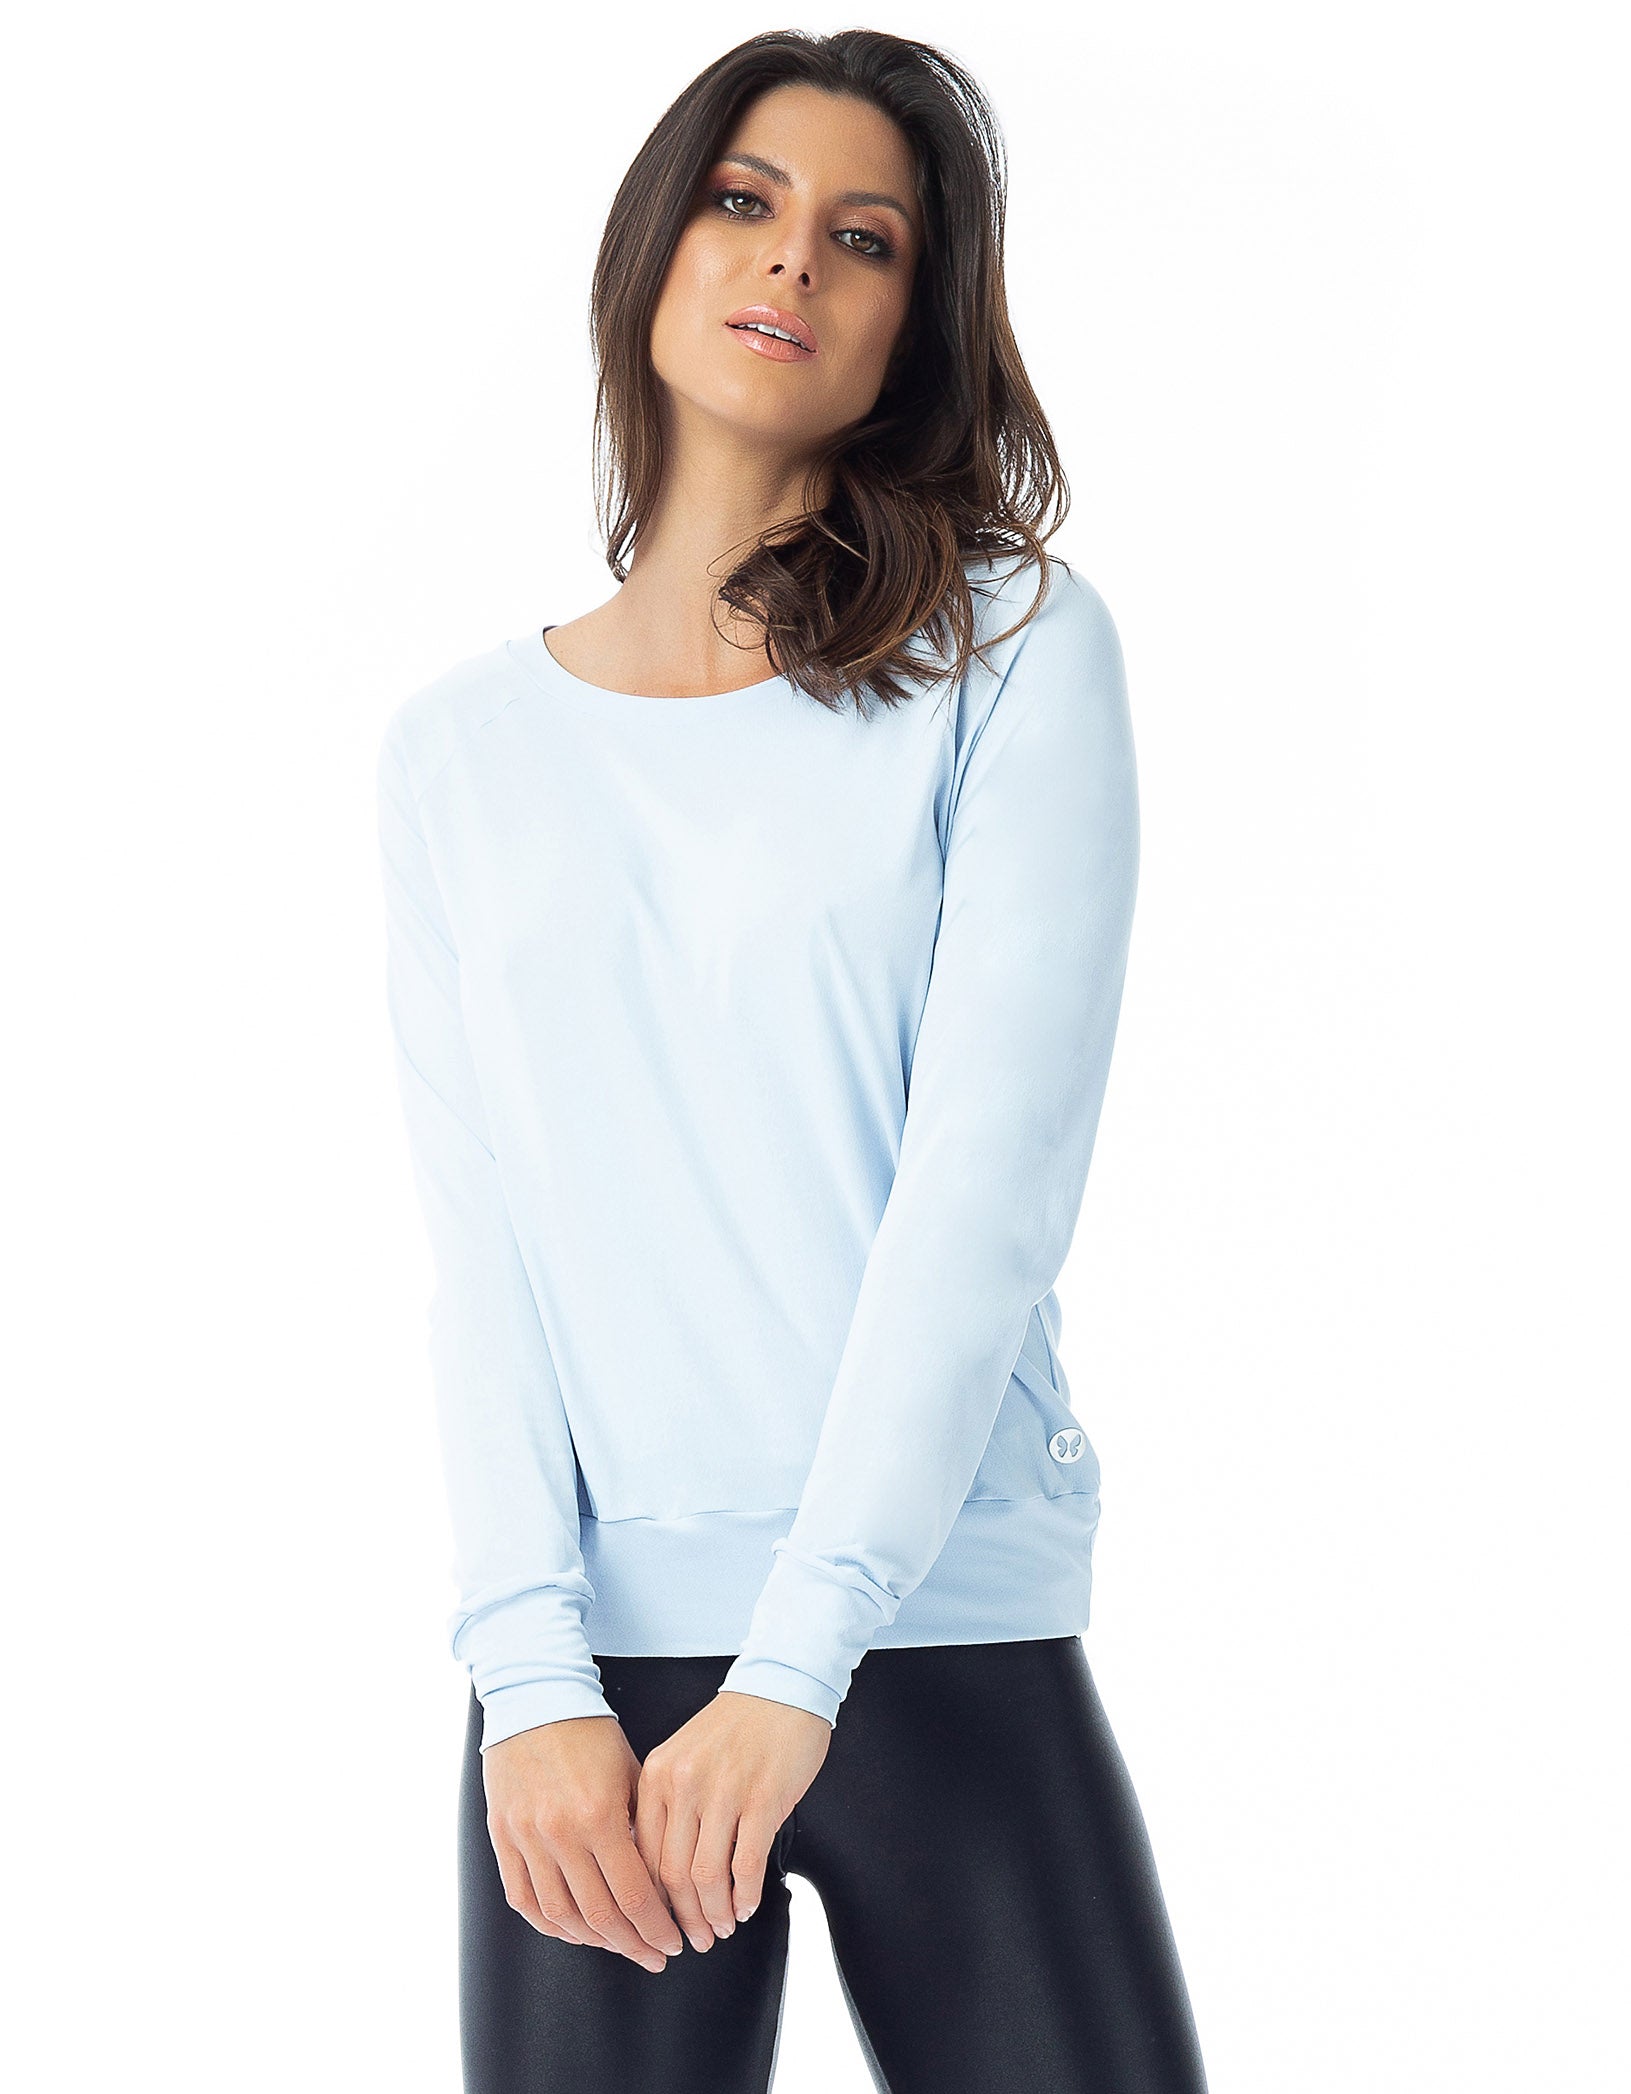 Vestem - Shirt Dry Fit Long Sleeve Soul Blue Drizzle - BML155.C0244